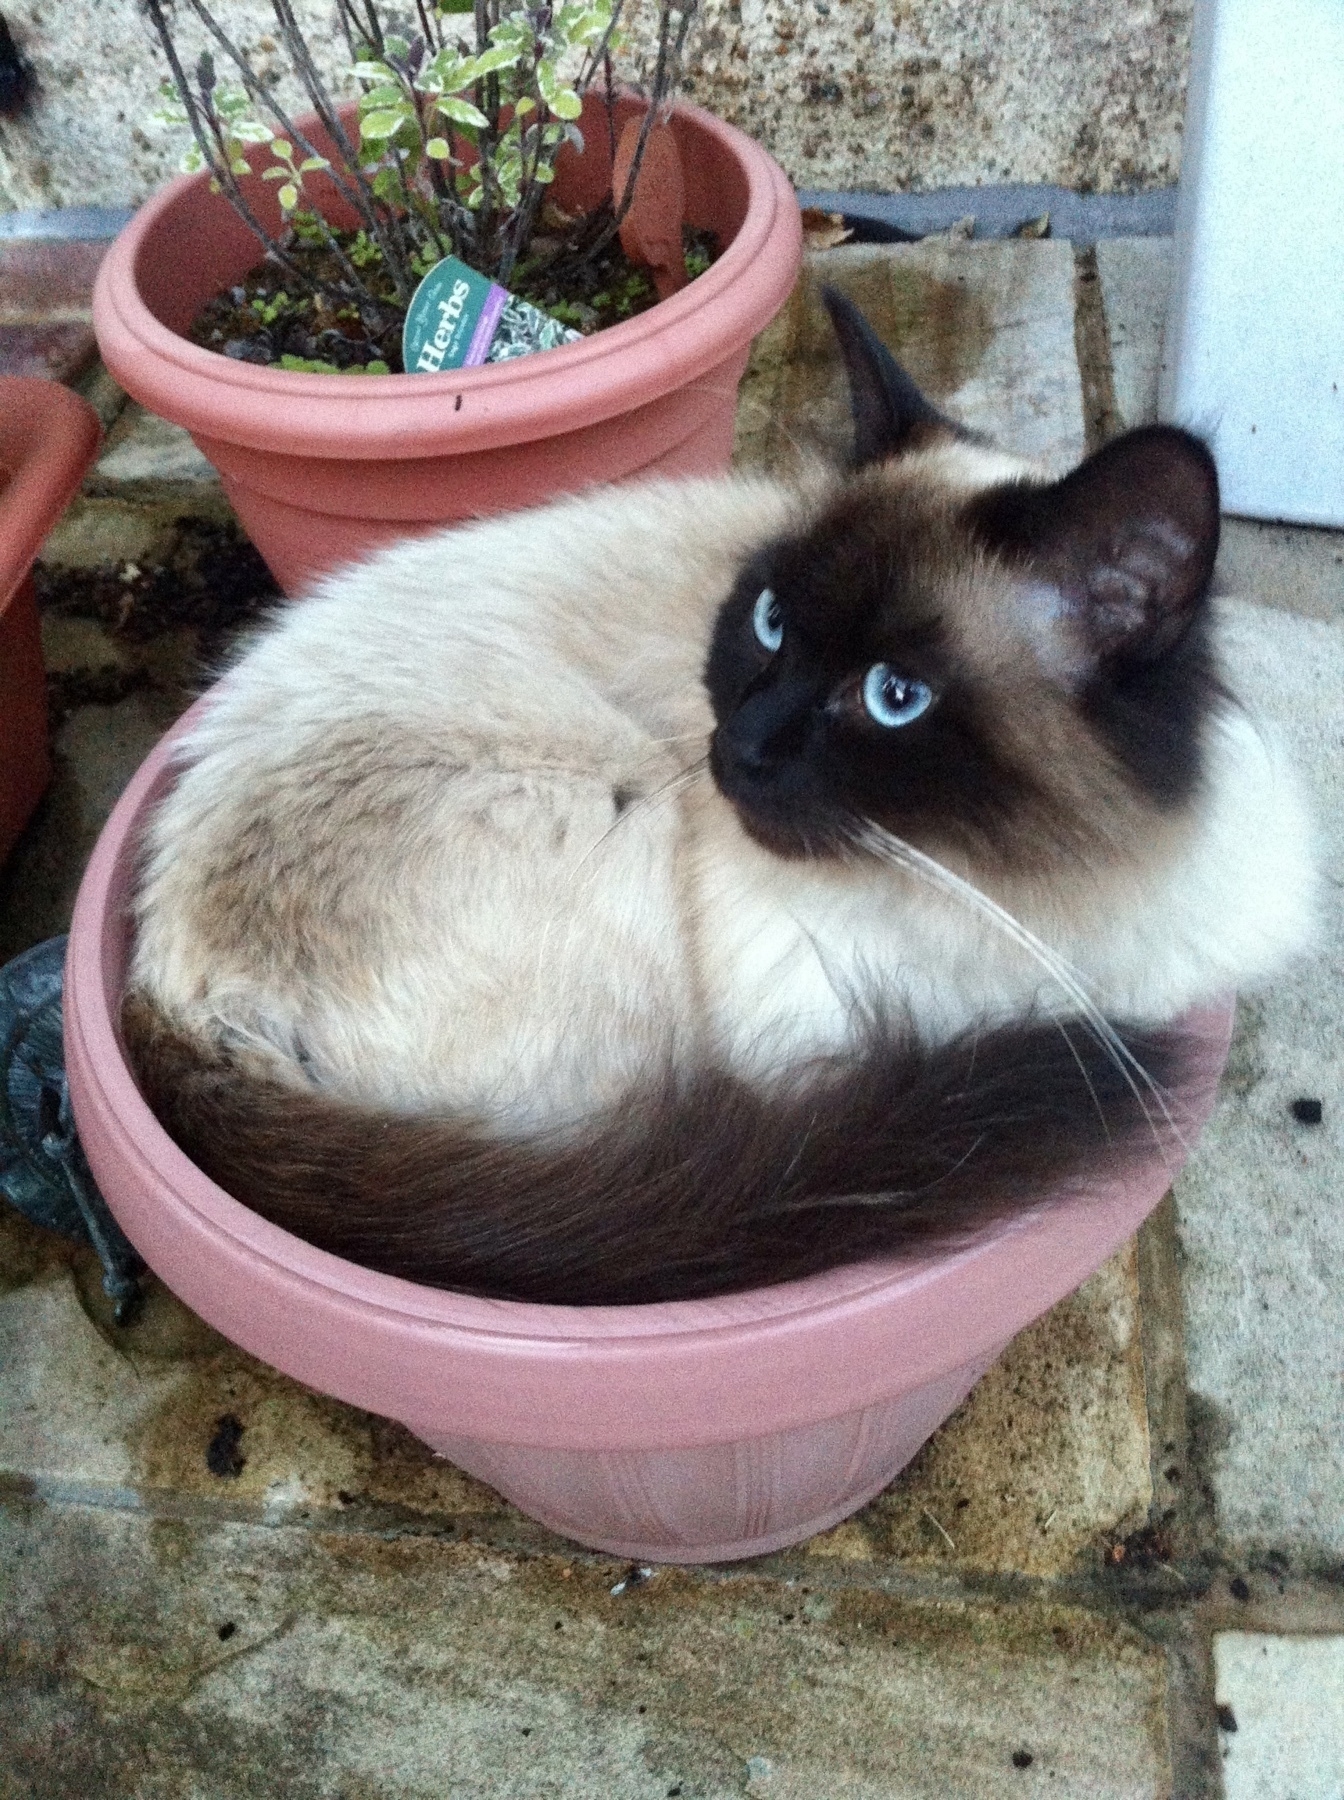 a cat in a plant pot